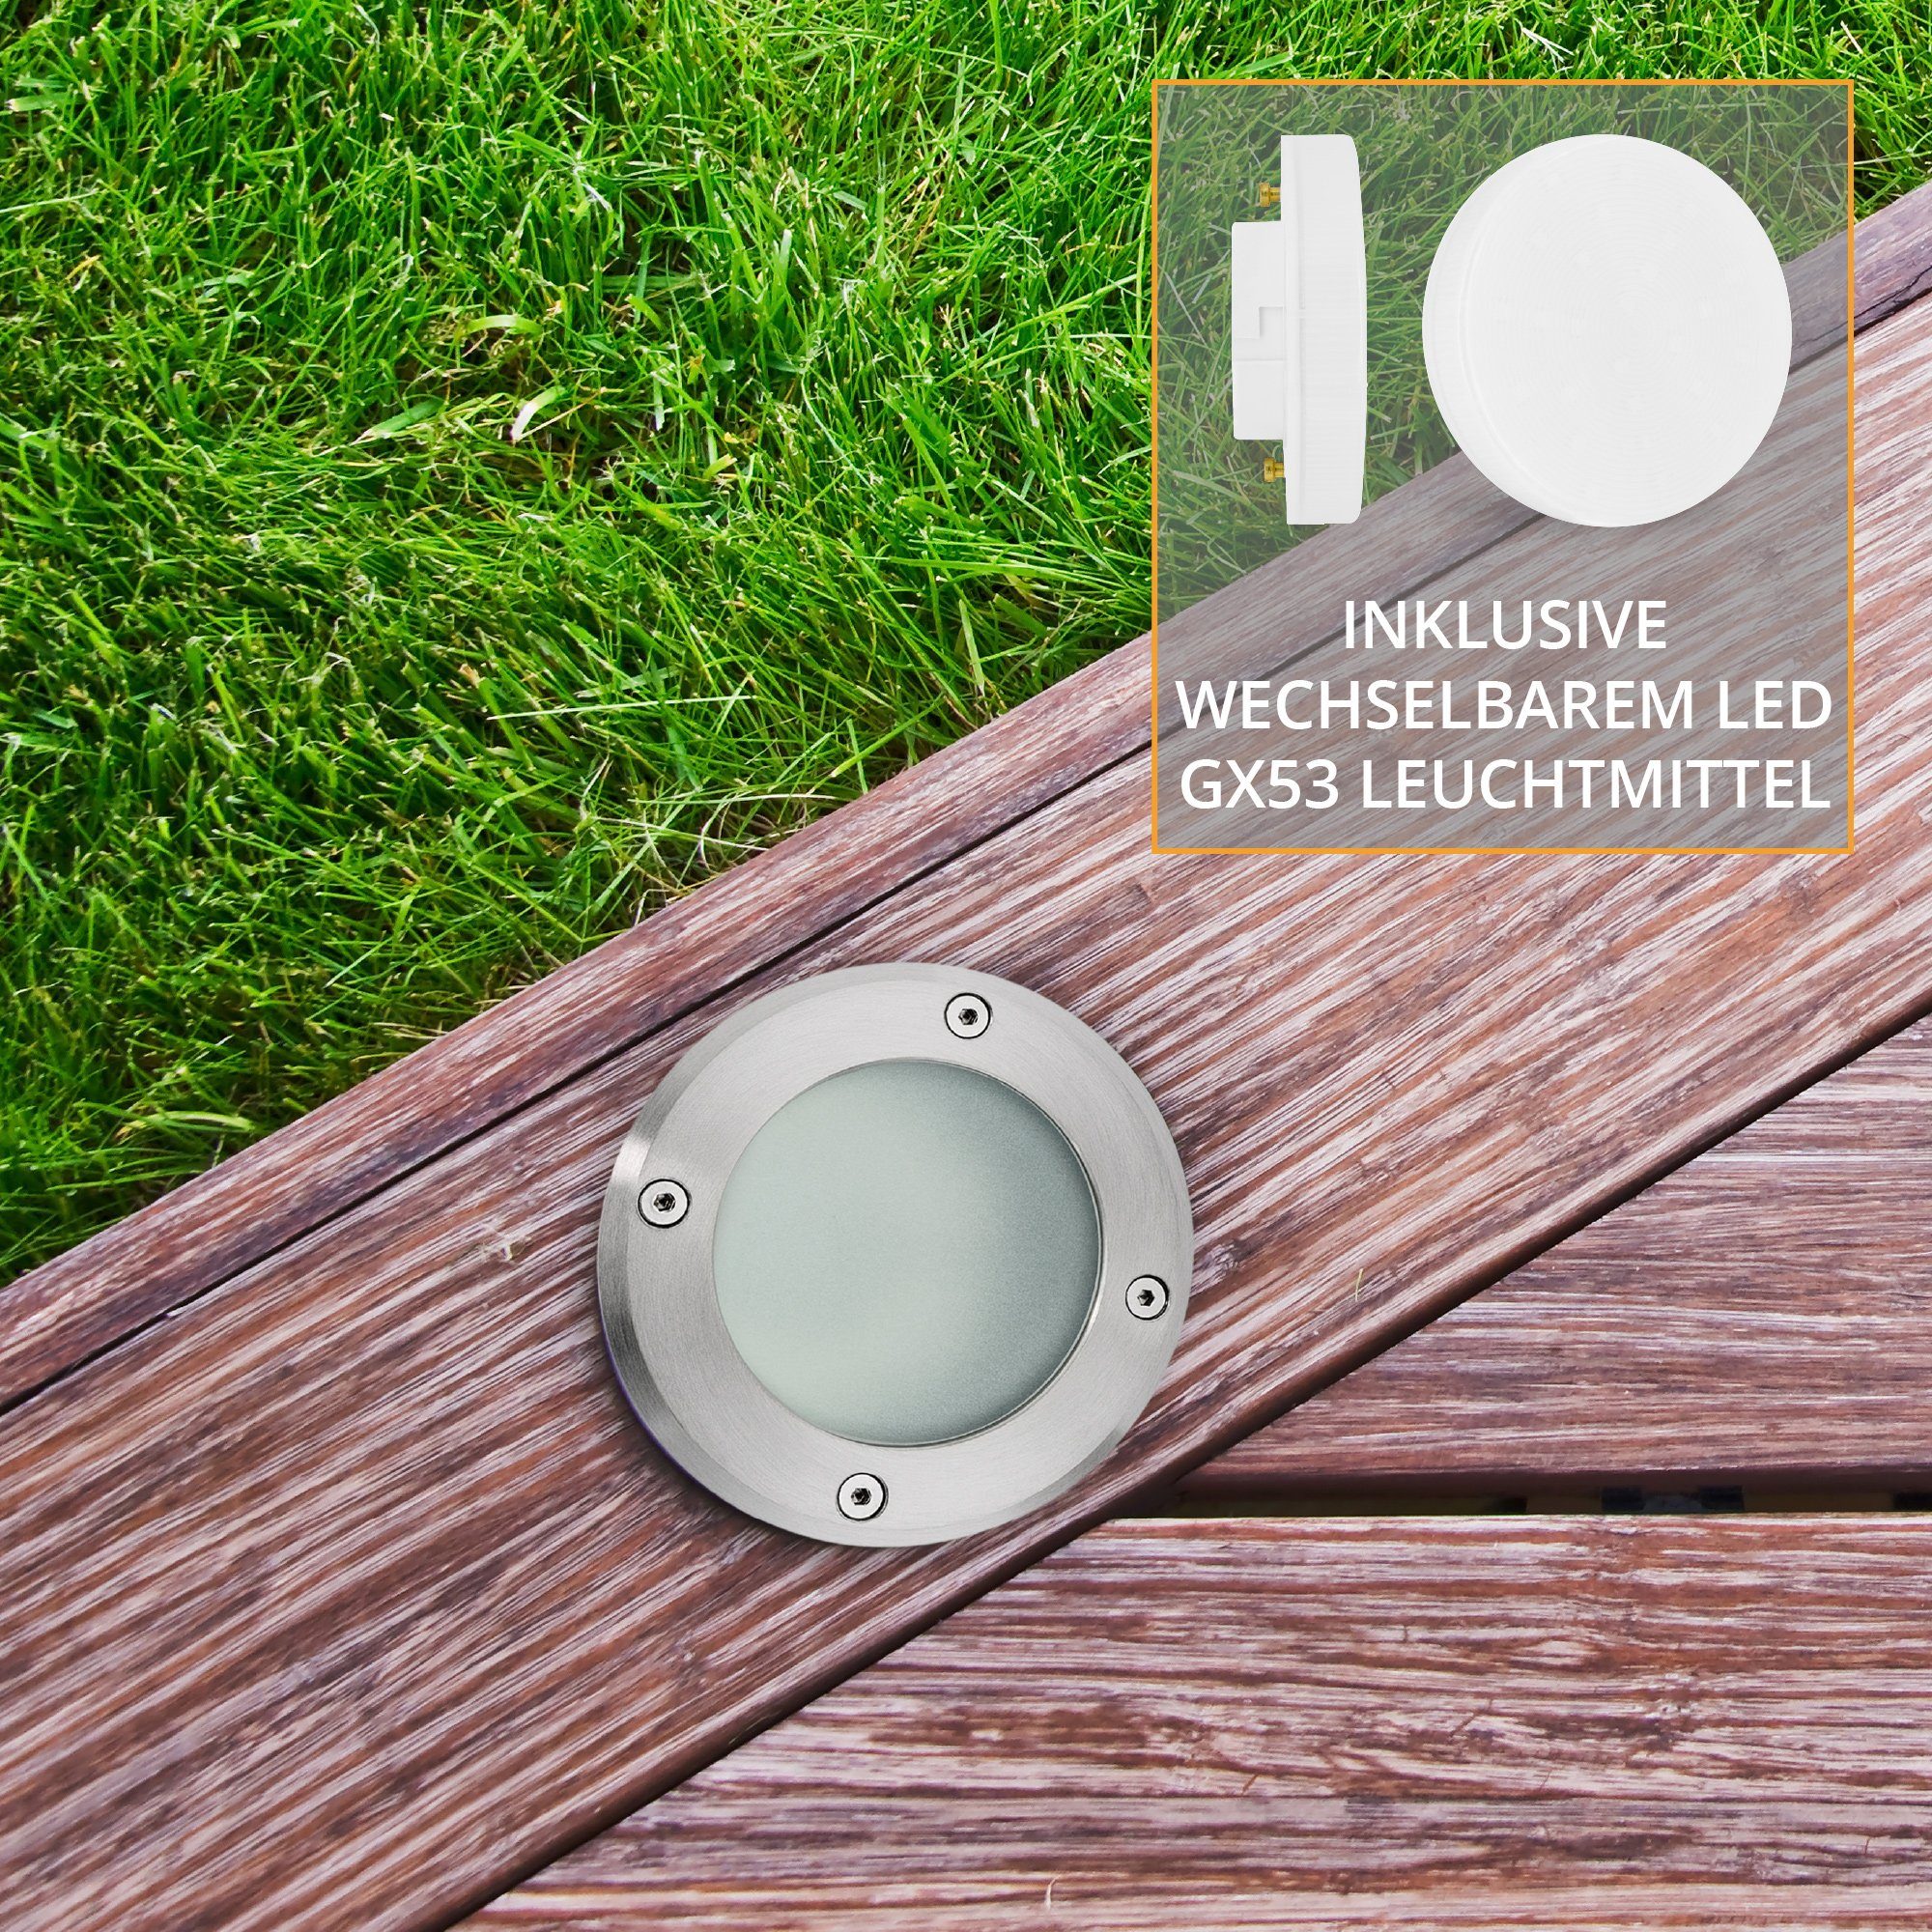 VISKOS LED warmweiss SSC-LUXon GX53 Warmweiß LED 3W Bodenstrahler, 230V Bodeneinbauleuchte Gartenstrahler mit